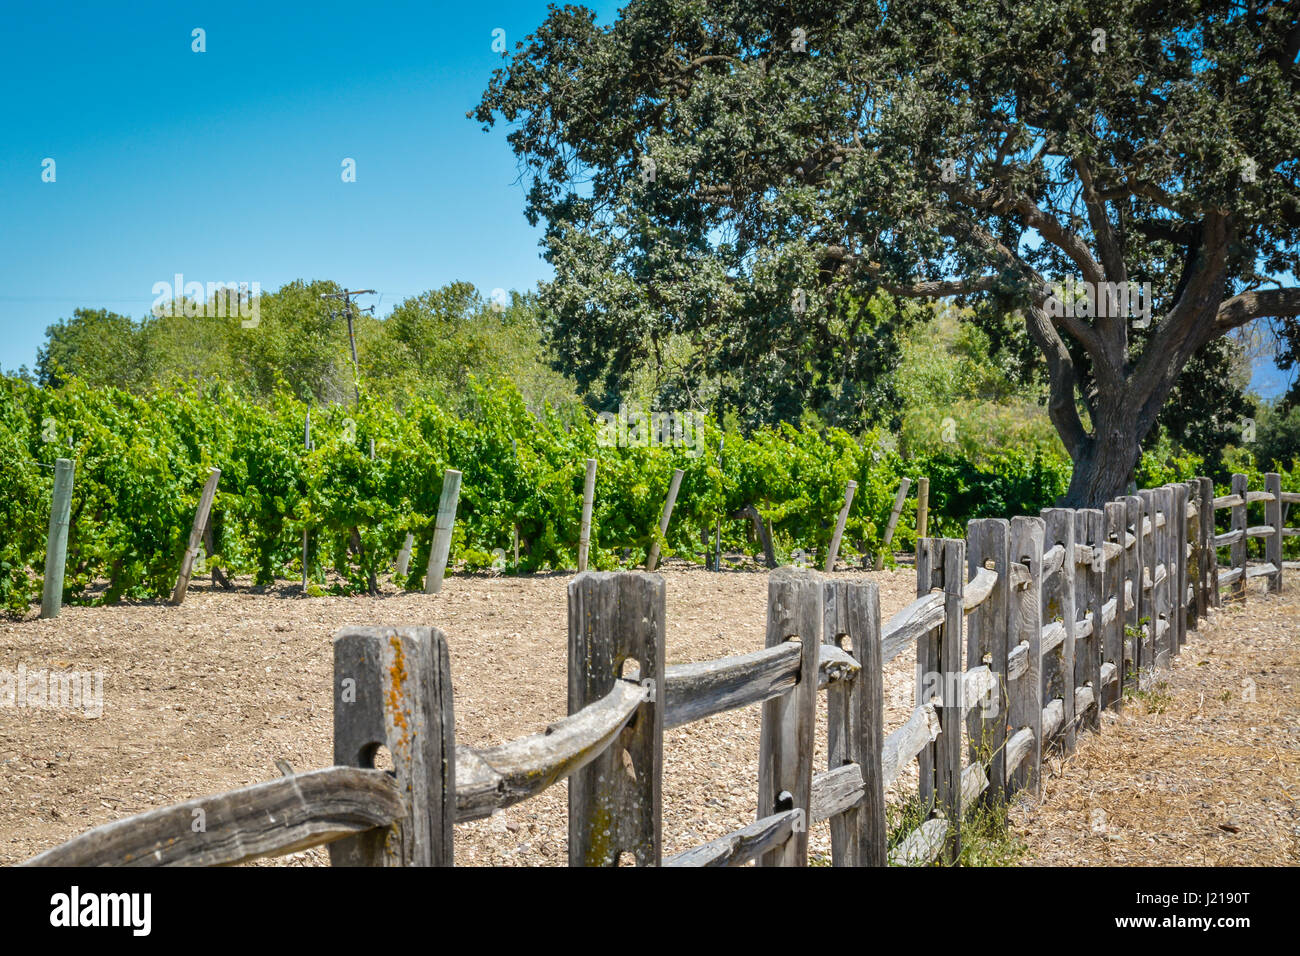 Eine Perspektive auf einen hölzernen Zaun führt Weg zu einem Weinberg zwischen den Küsten Phaseneiche Bäumen in Santa Ynez Tal Wein-Land in Süd-Kalifornien Stockfoto